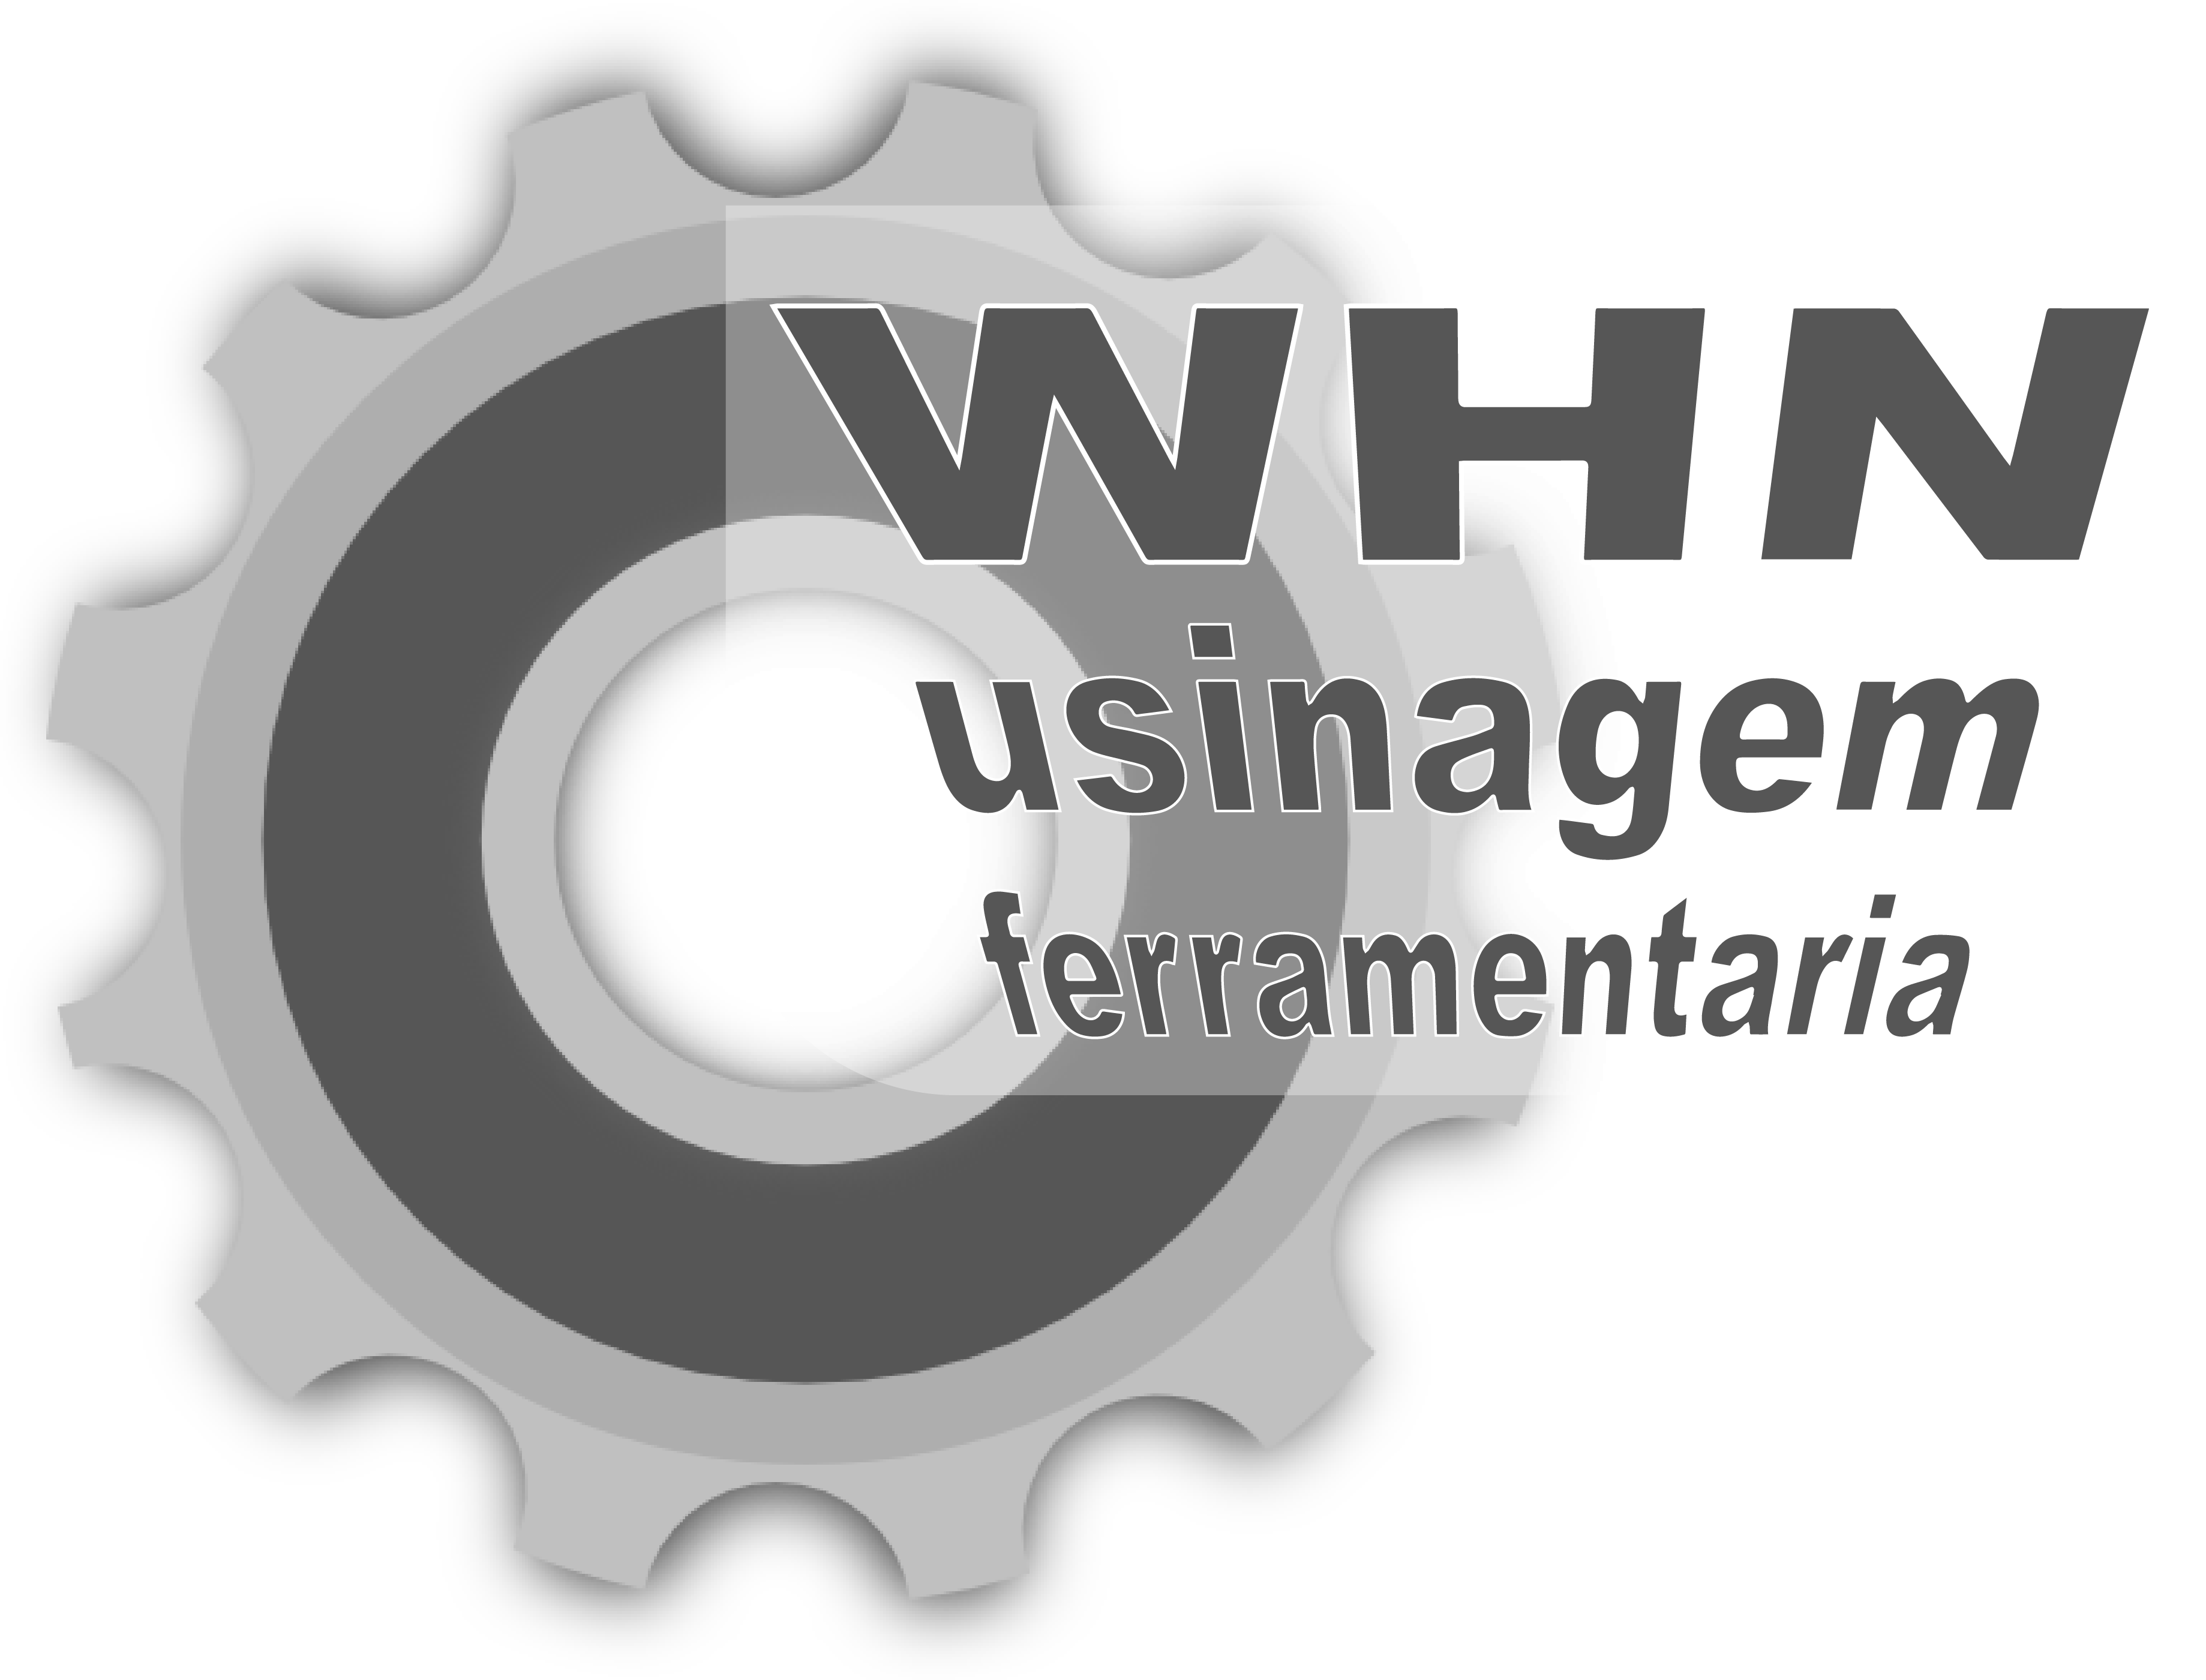 WHN Usinagem é qualidade e precisão na criação e produção de ferramentas e peças para Micro fusão.